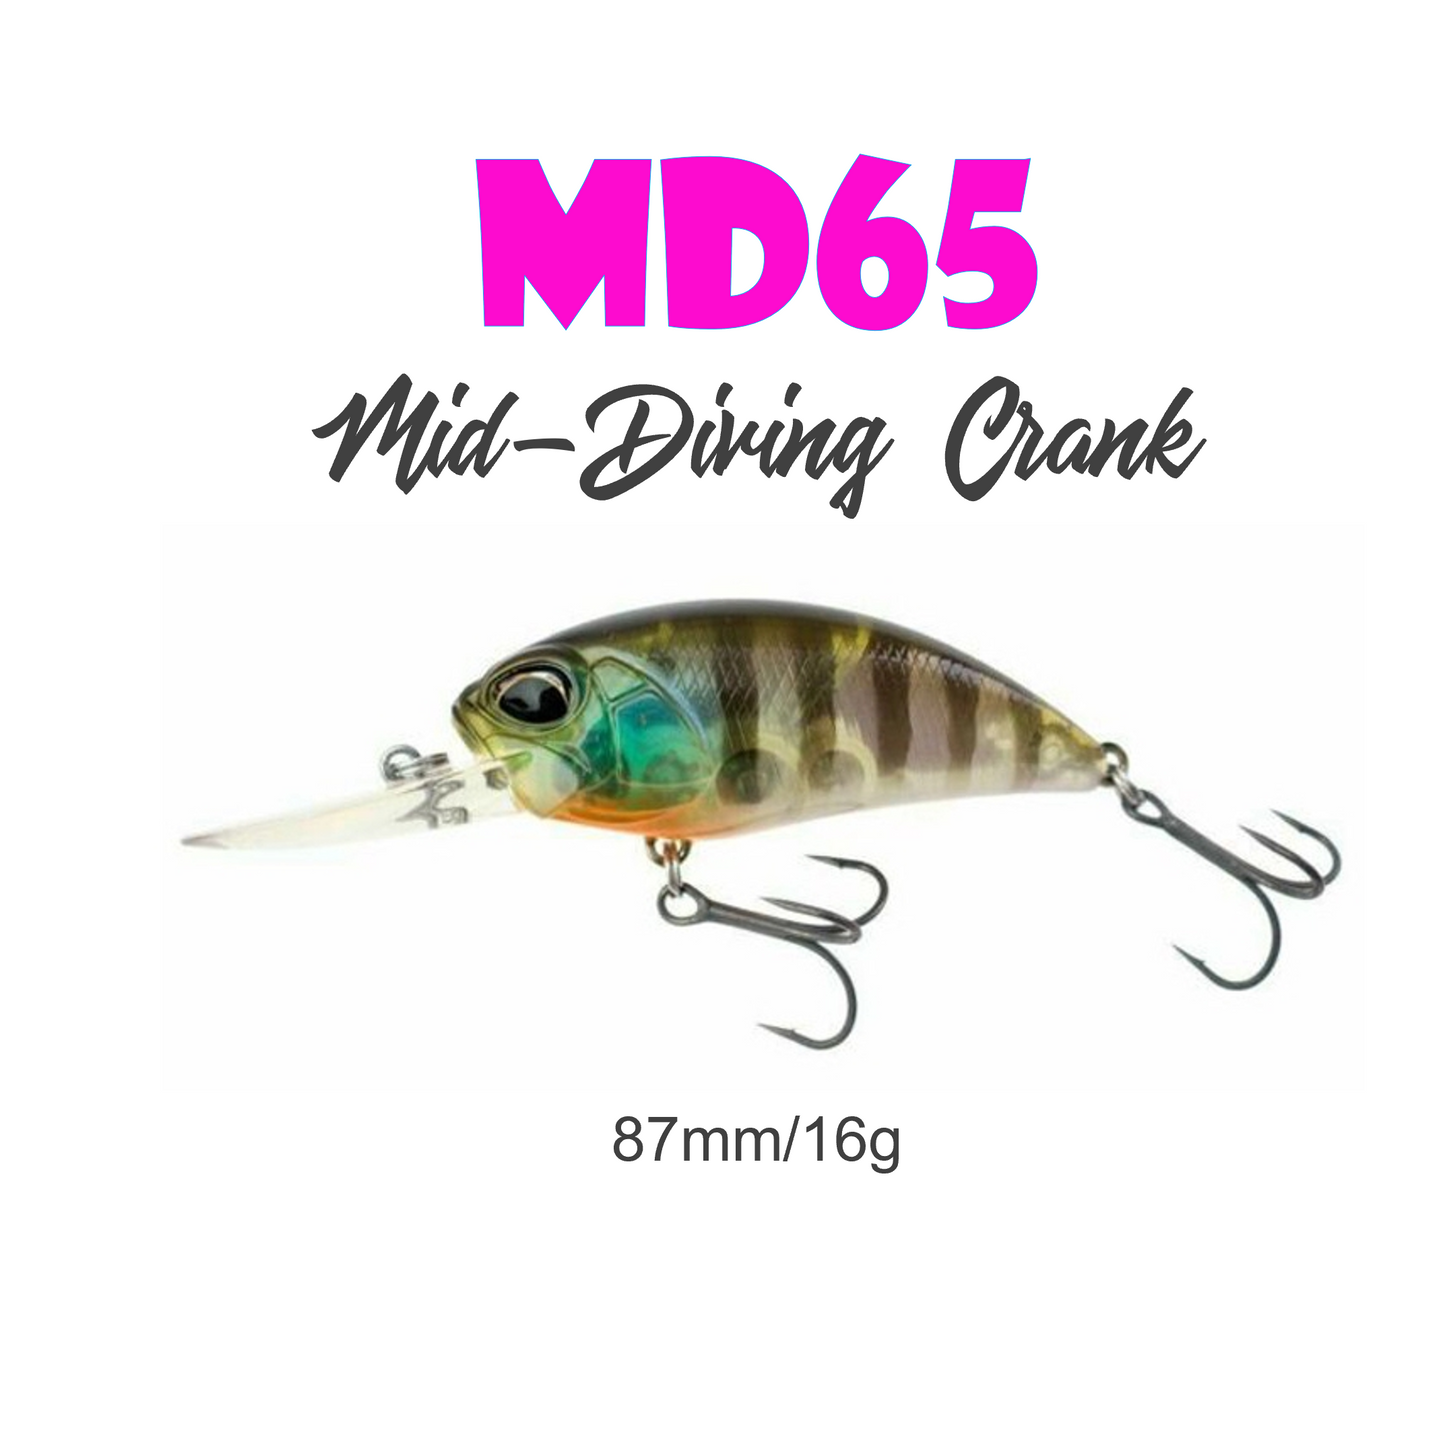 Mid-Diving Crank MD65 9065